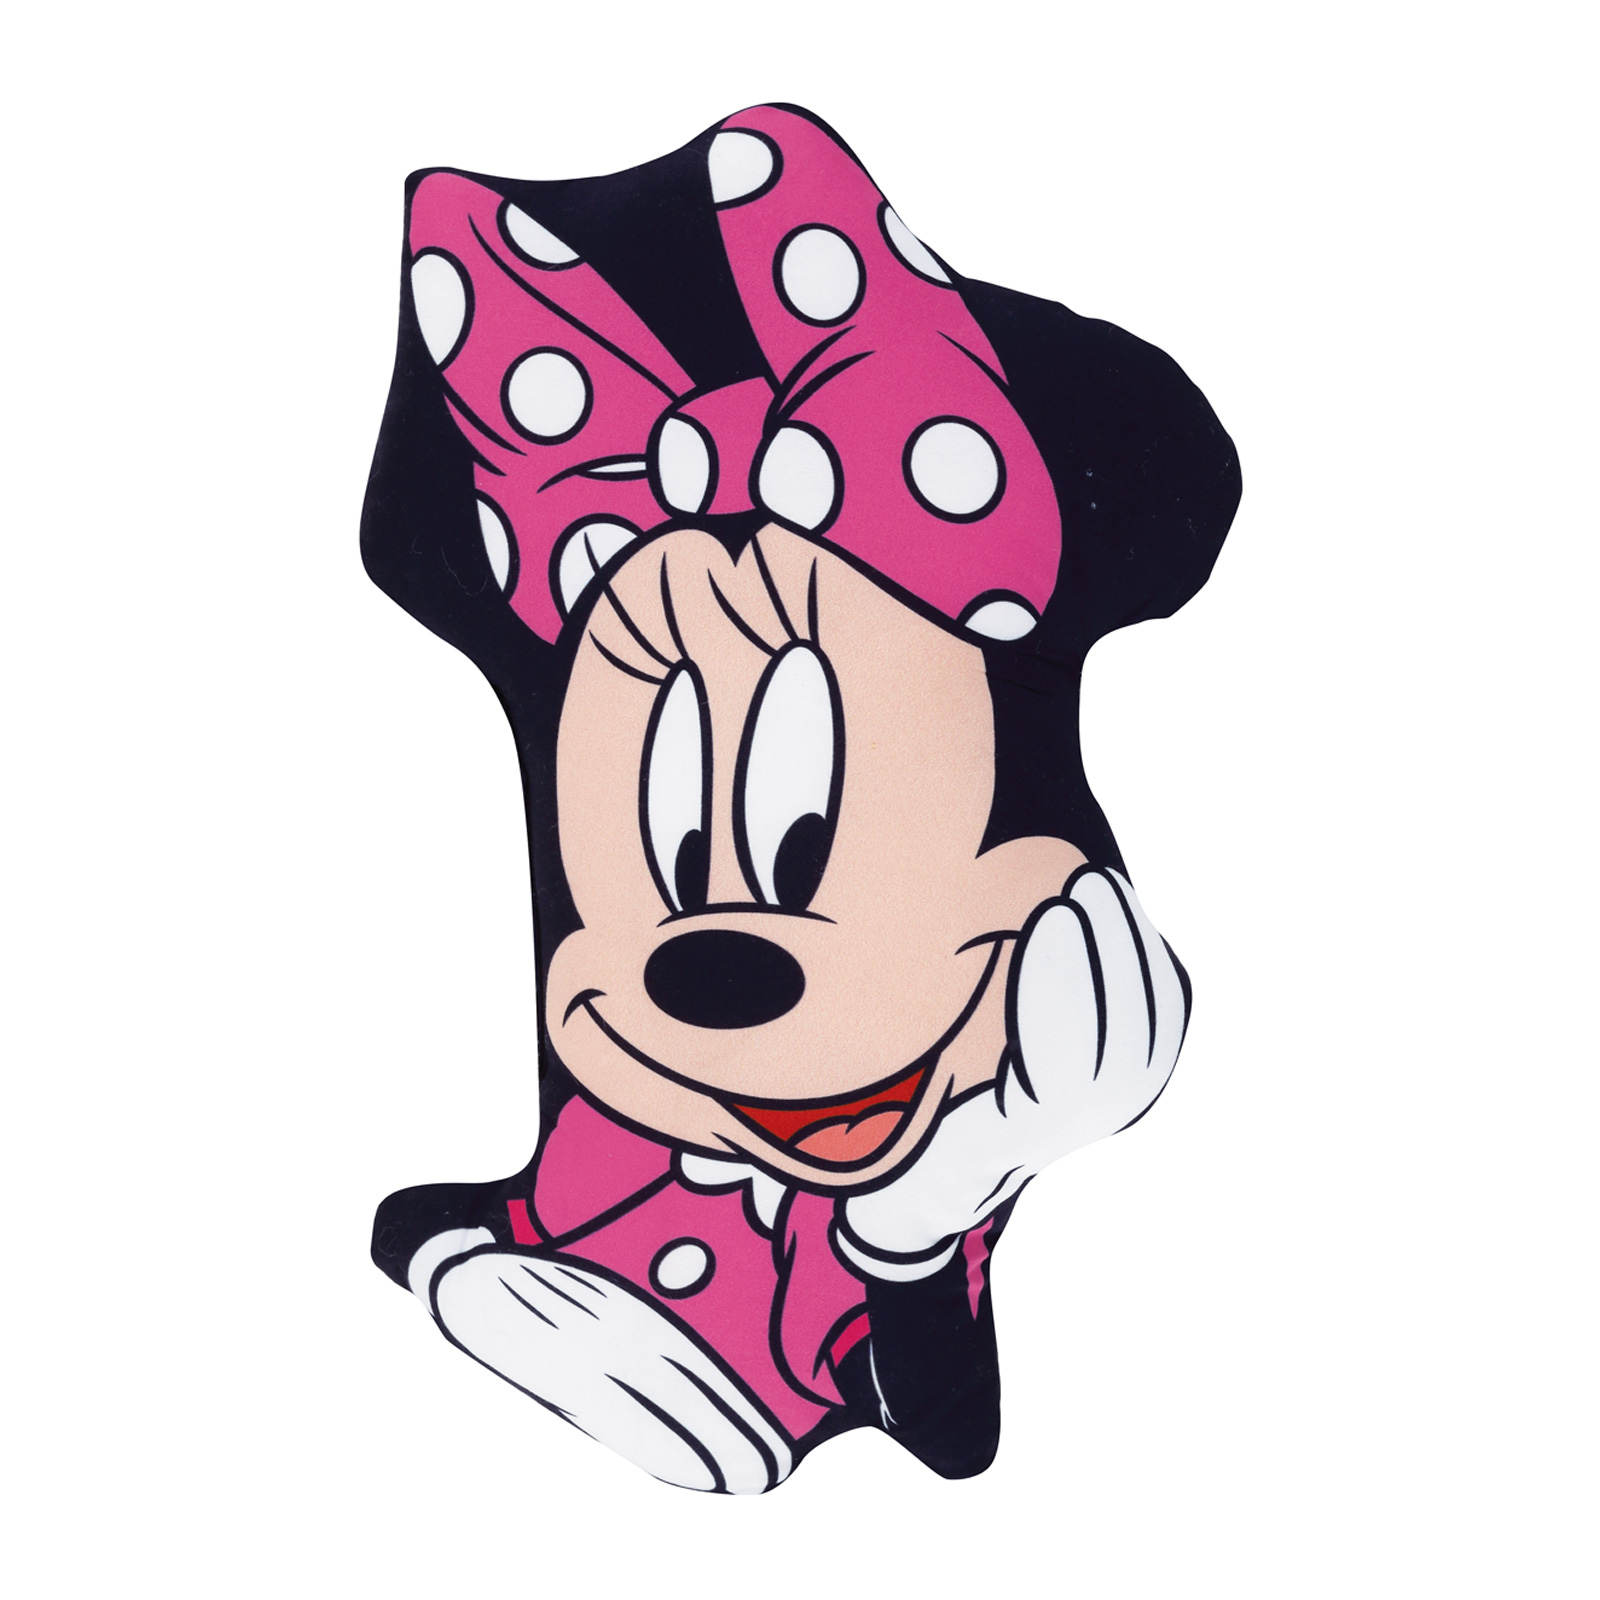 Μαξιλάρι Διακοσμητικό Microfiber 34x23εκ. Minnie 5508 Disney (Ύφασμα: Microfiber, Χρώμα: Ροζ) - Disney - 533342305508